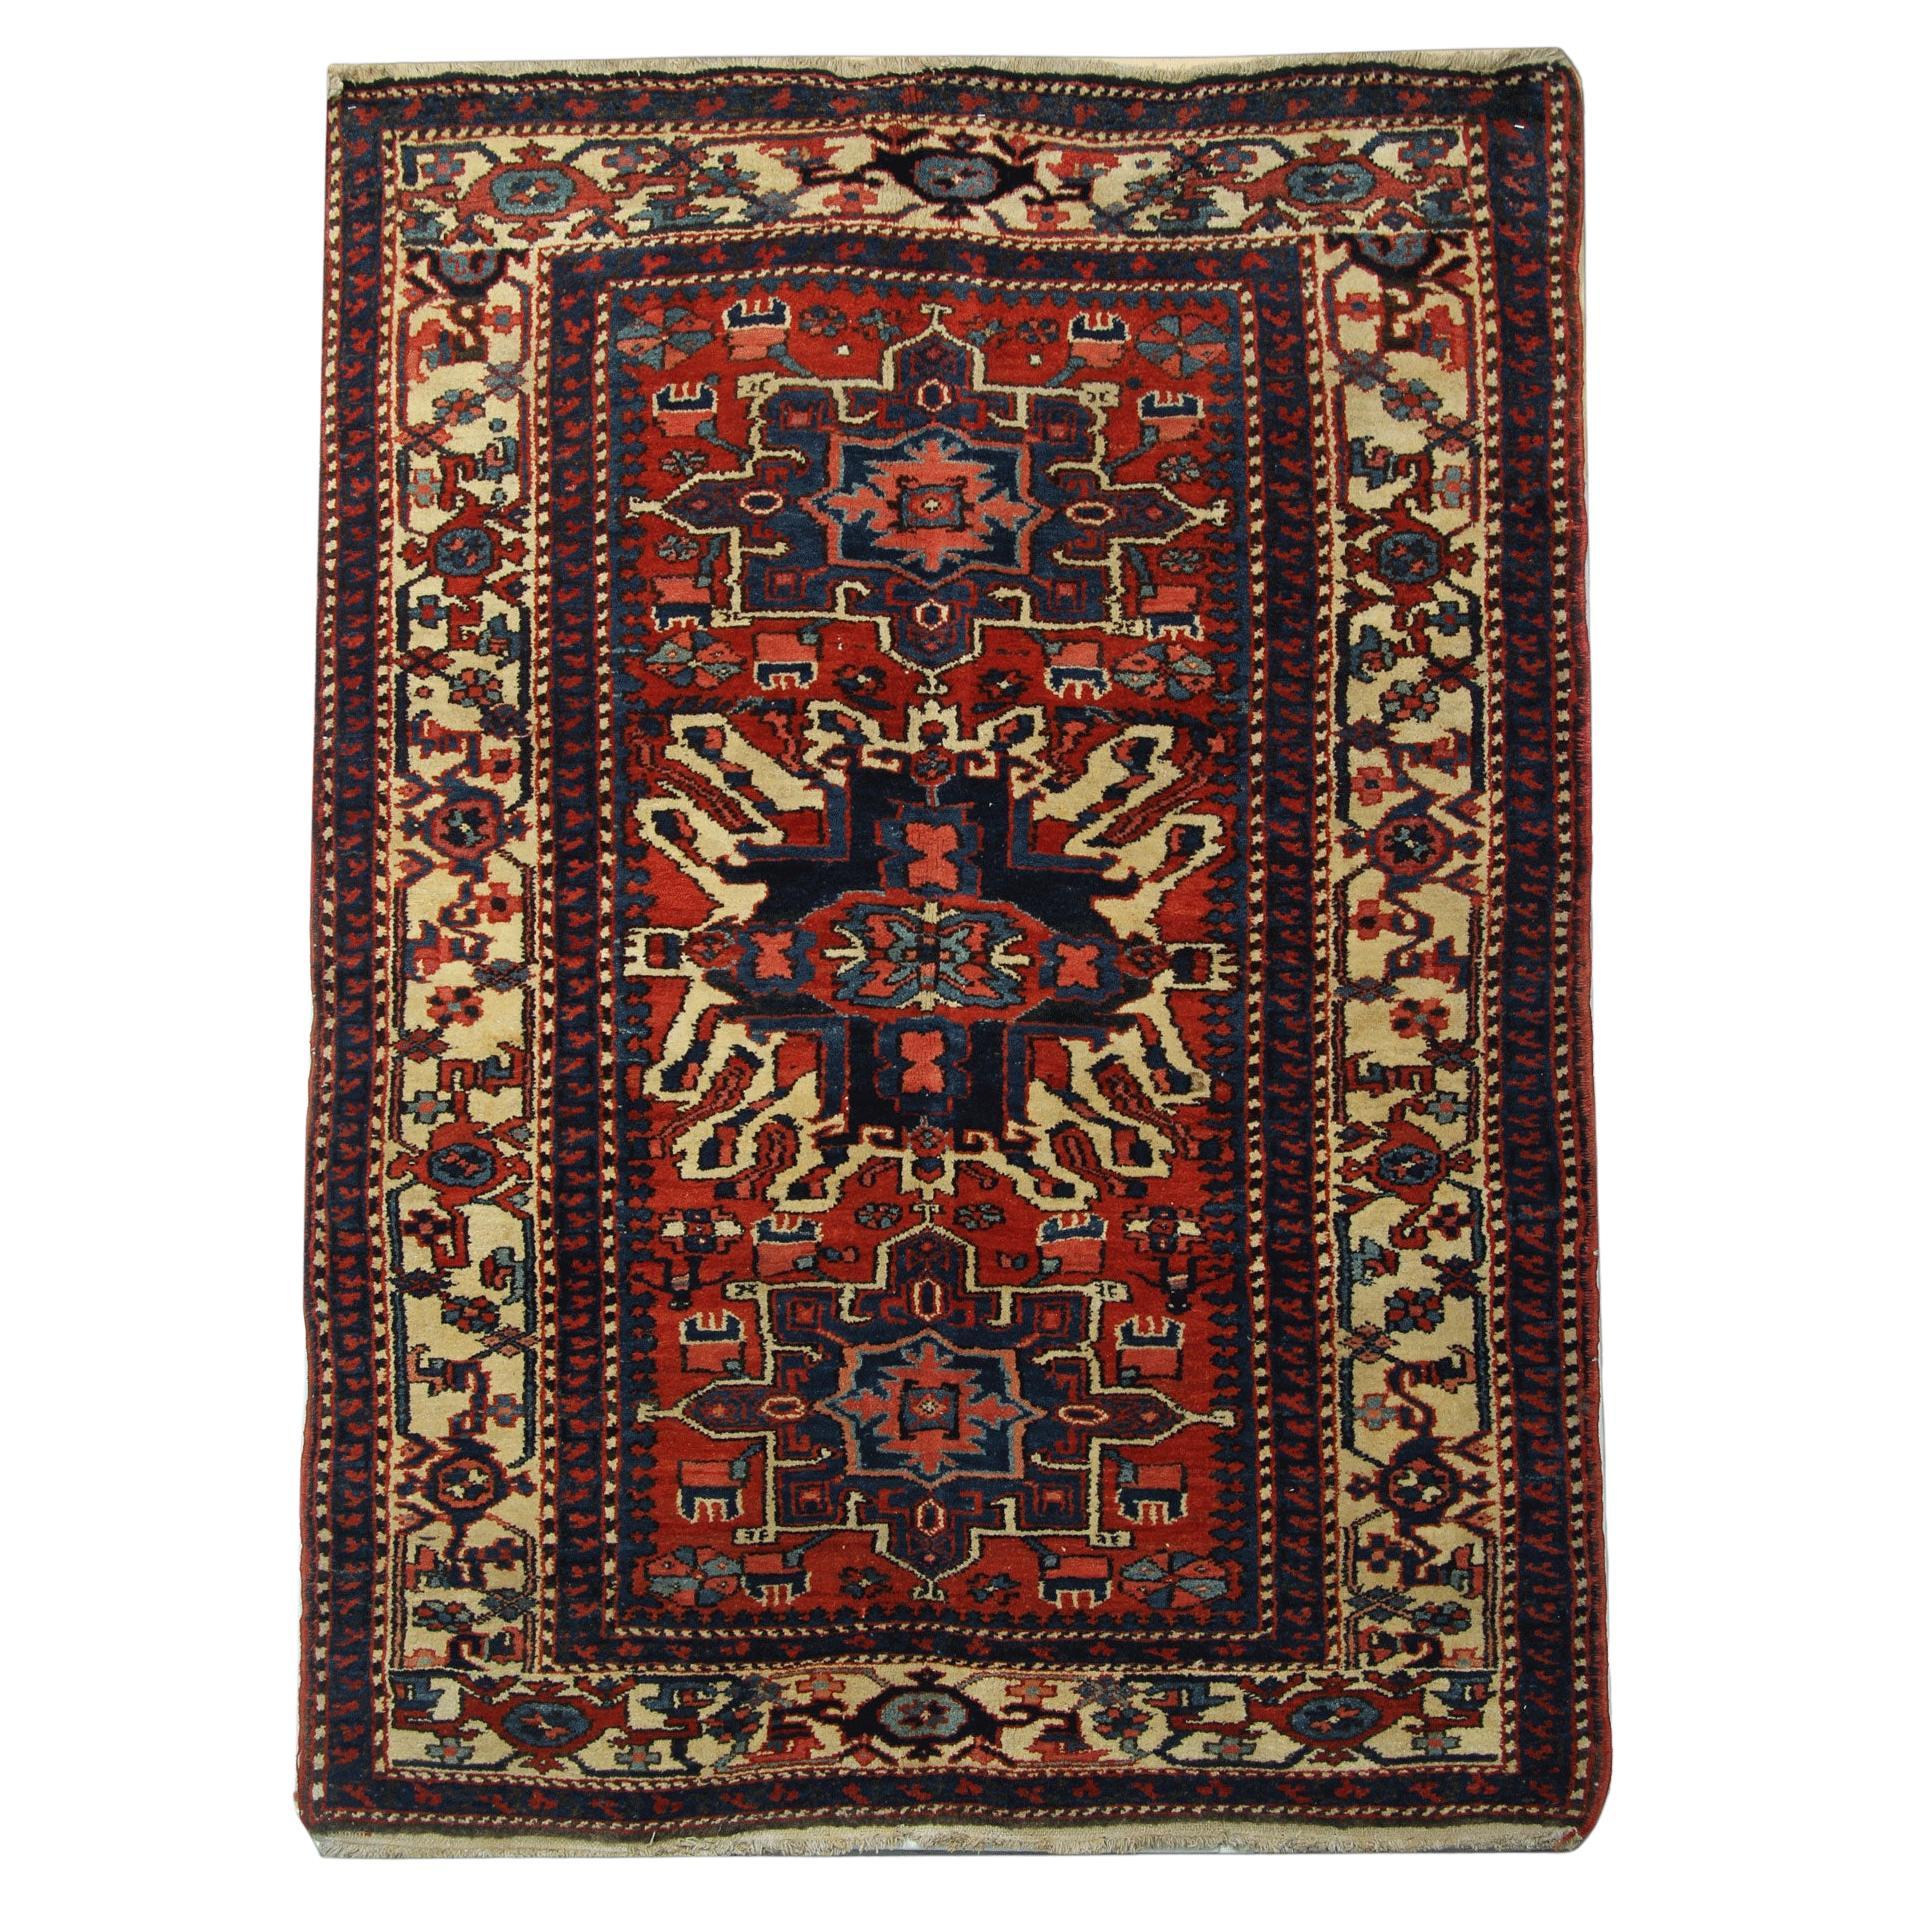 Rustikaler handgefertigter orientalischer geometrischer Teppich aus rostfarbener Wolle, Wohnzimmerteppich